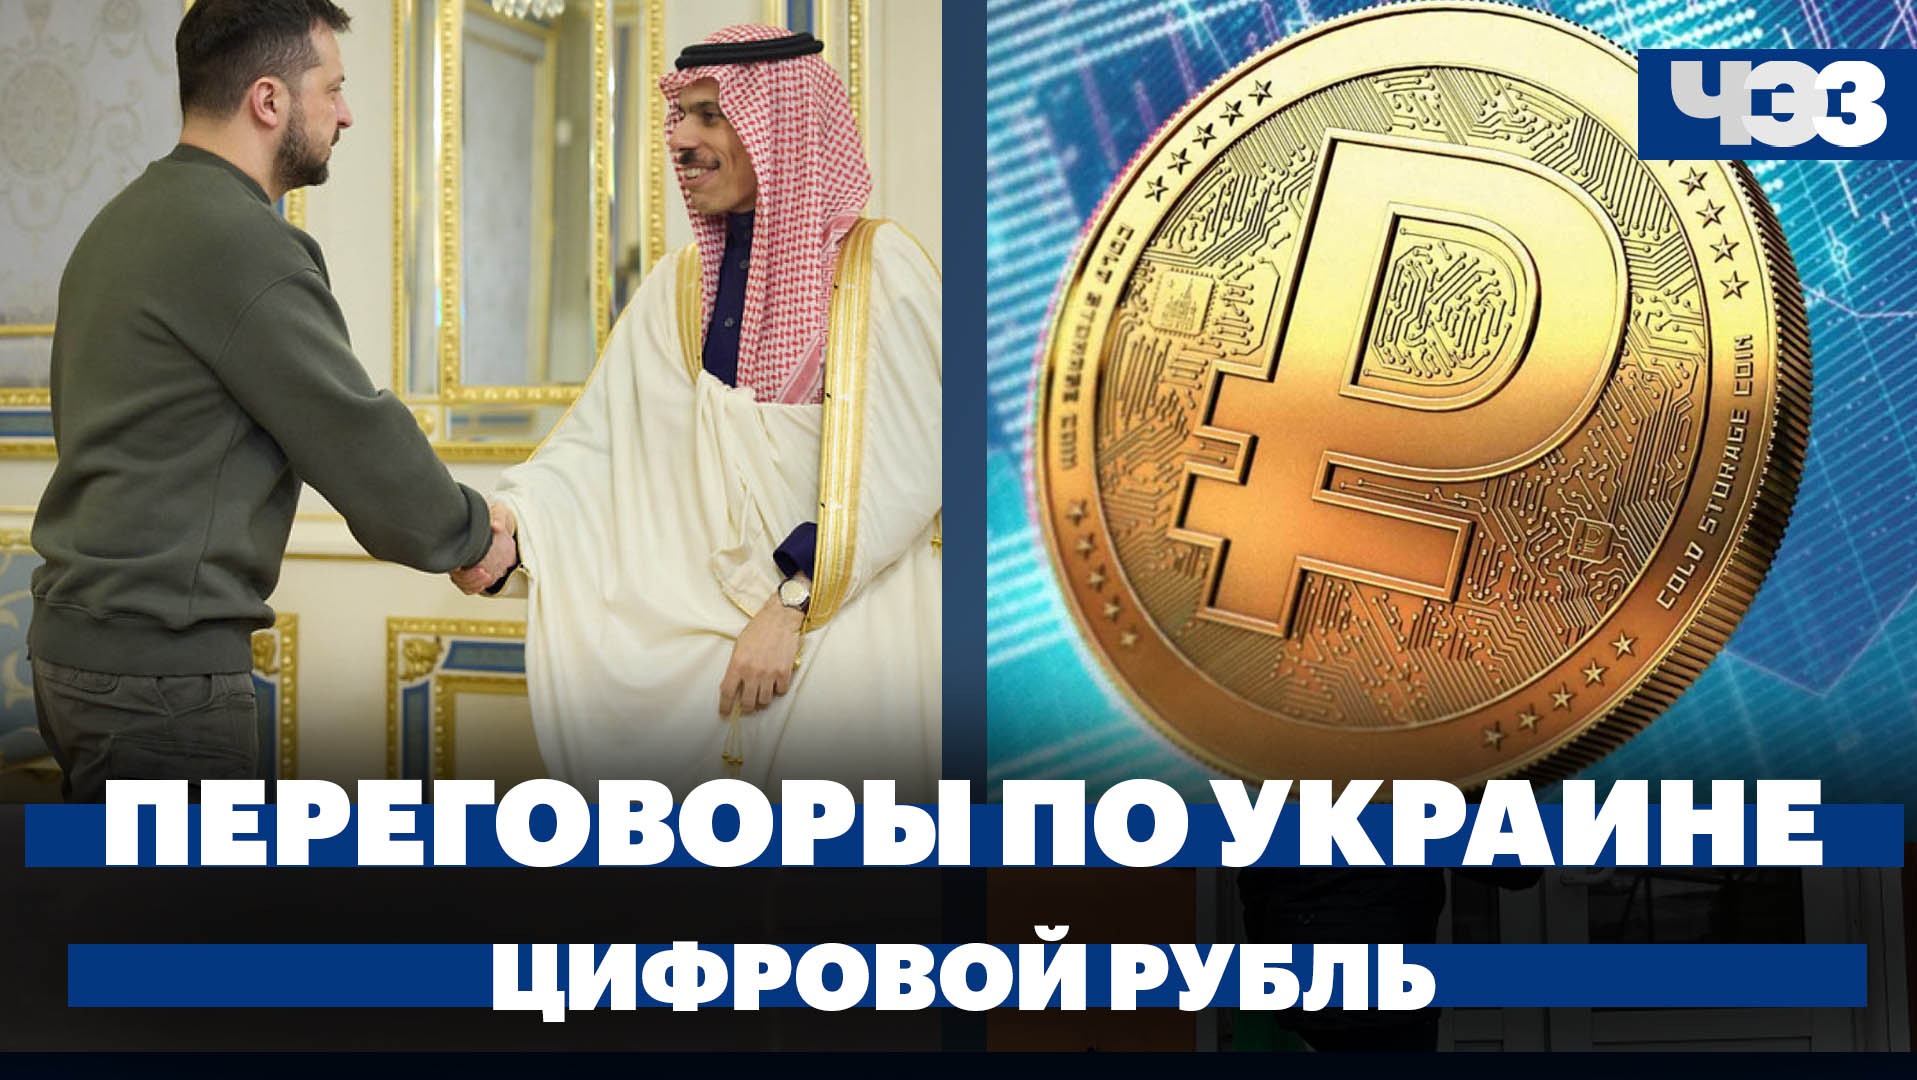 Переговоры по Украине в Саудовской Аравии, курс доллара превысил 92, закон о цифровом рубле